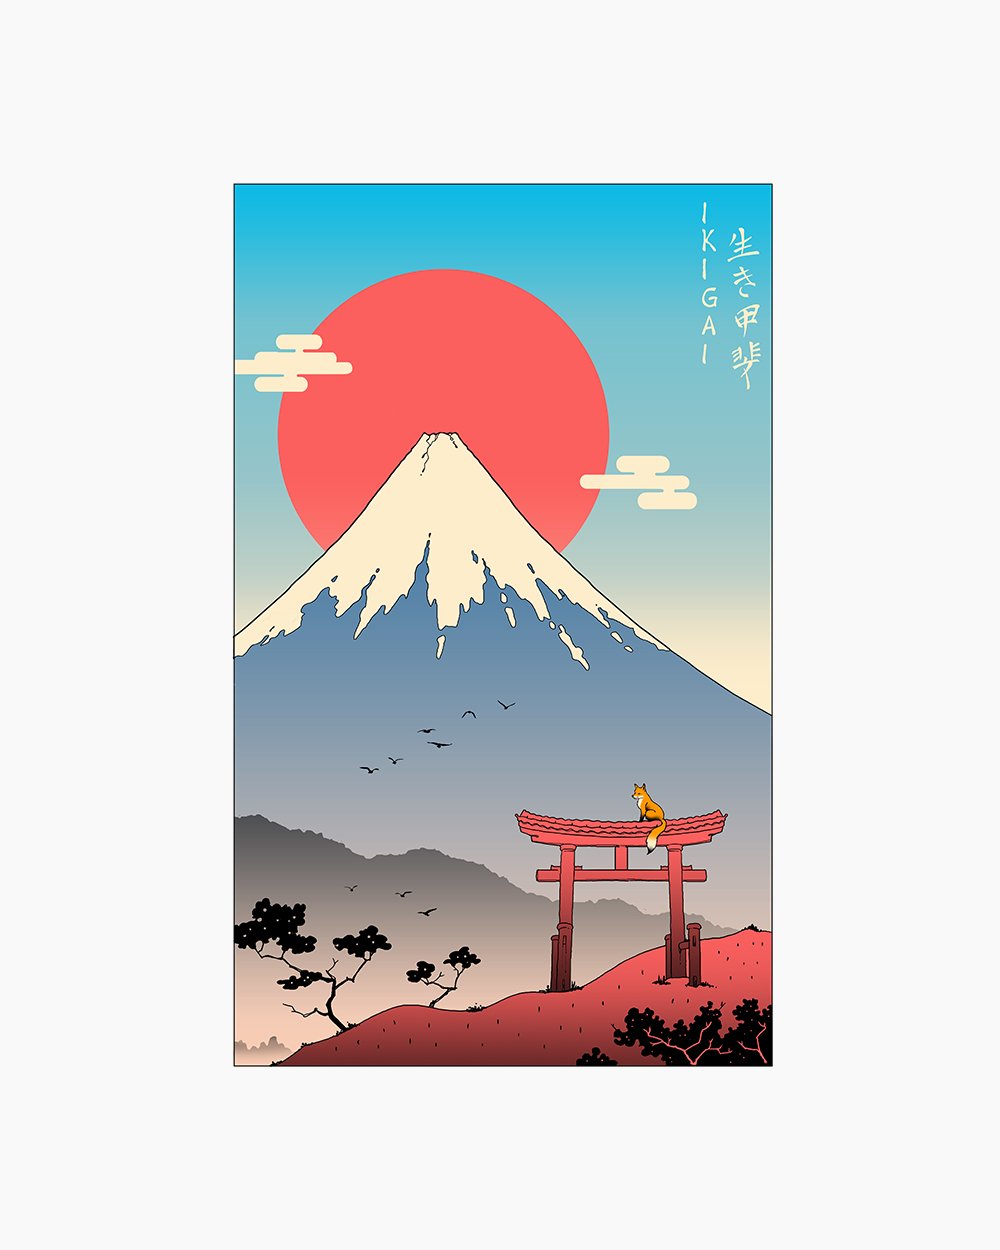 Ikigai in Mt Fuji T-Shirt Australia Online #colour_white